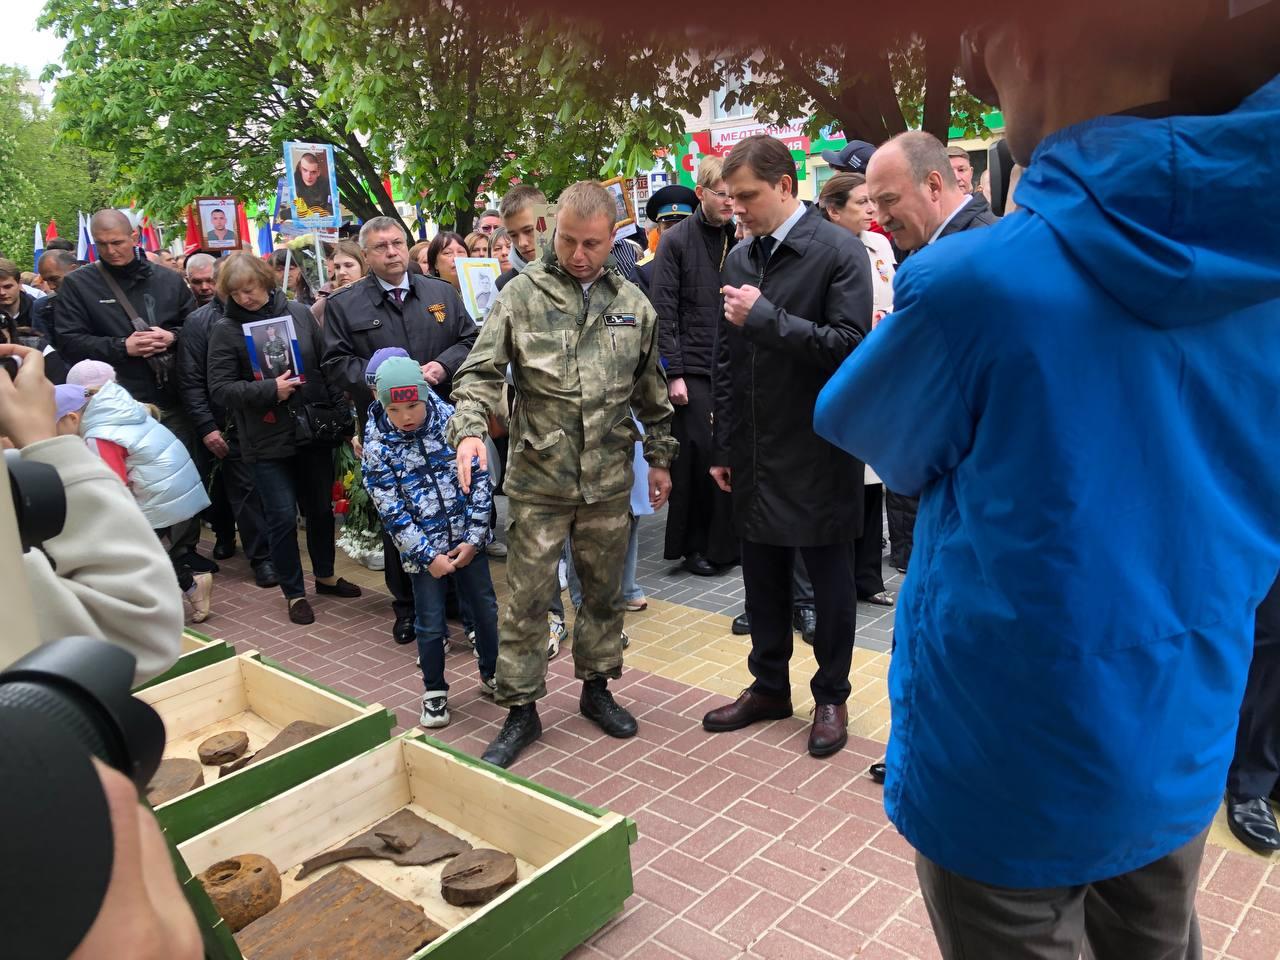 Губернатор Орловской области Андрей Клычков пообщался с жителями Орла в праздничной обстановке